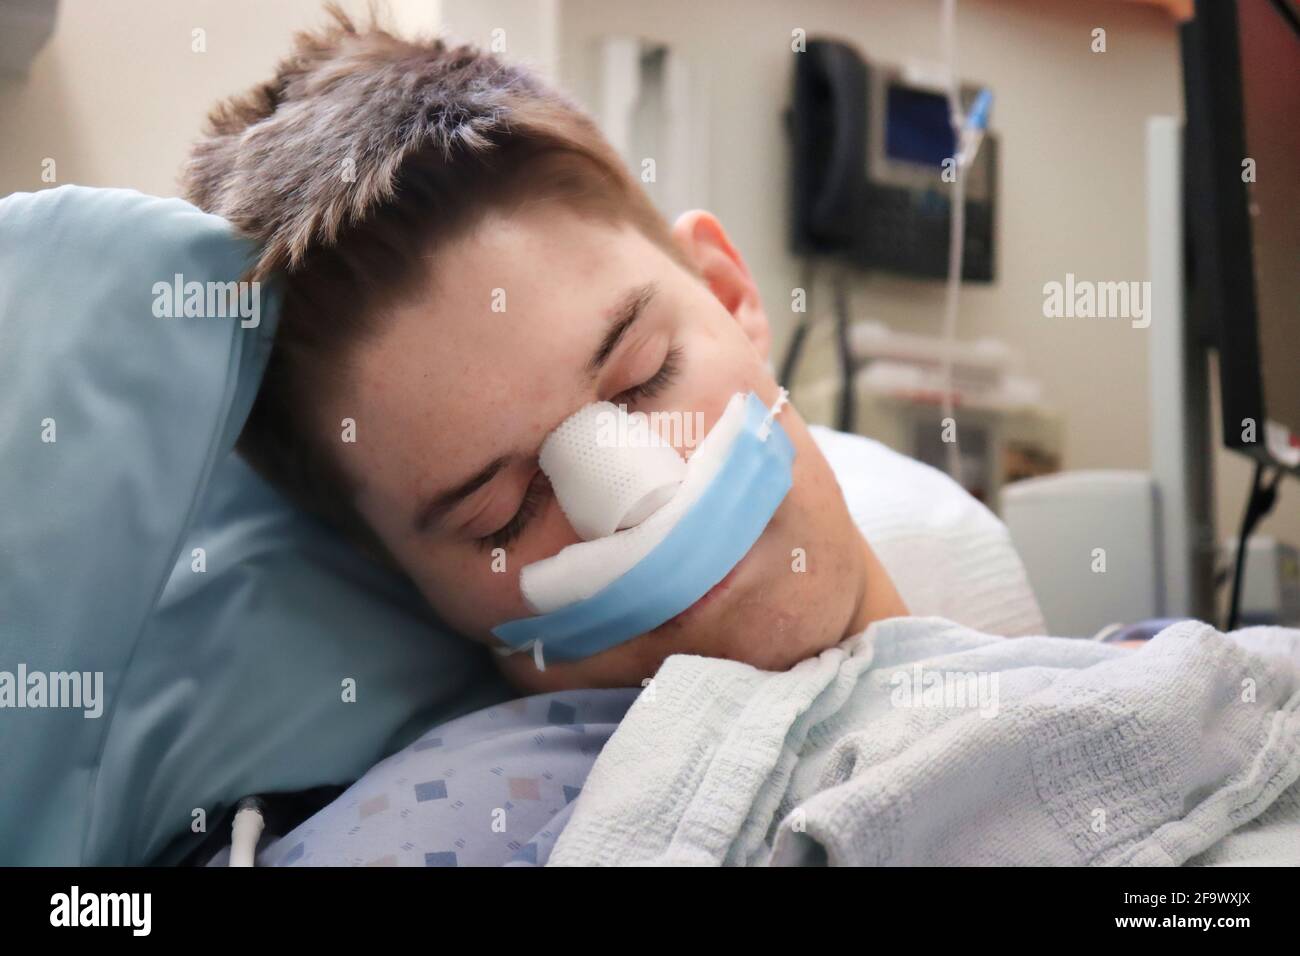 Primo piano del viso e delle bende di un ragazzo adolescente dopo un intervento chirurgico al naso. Foto Stock